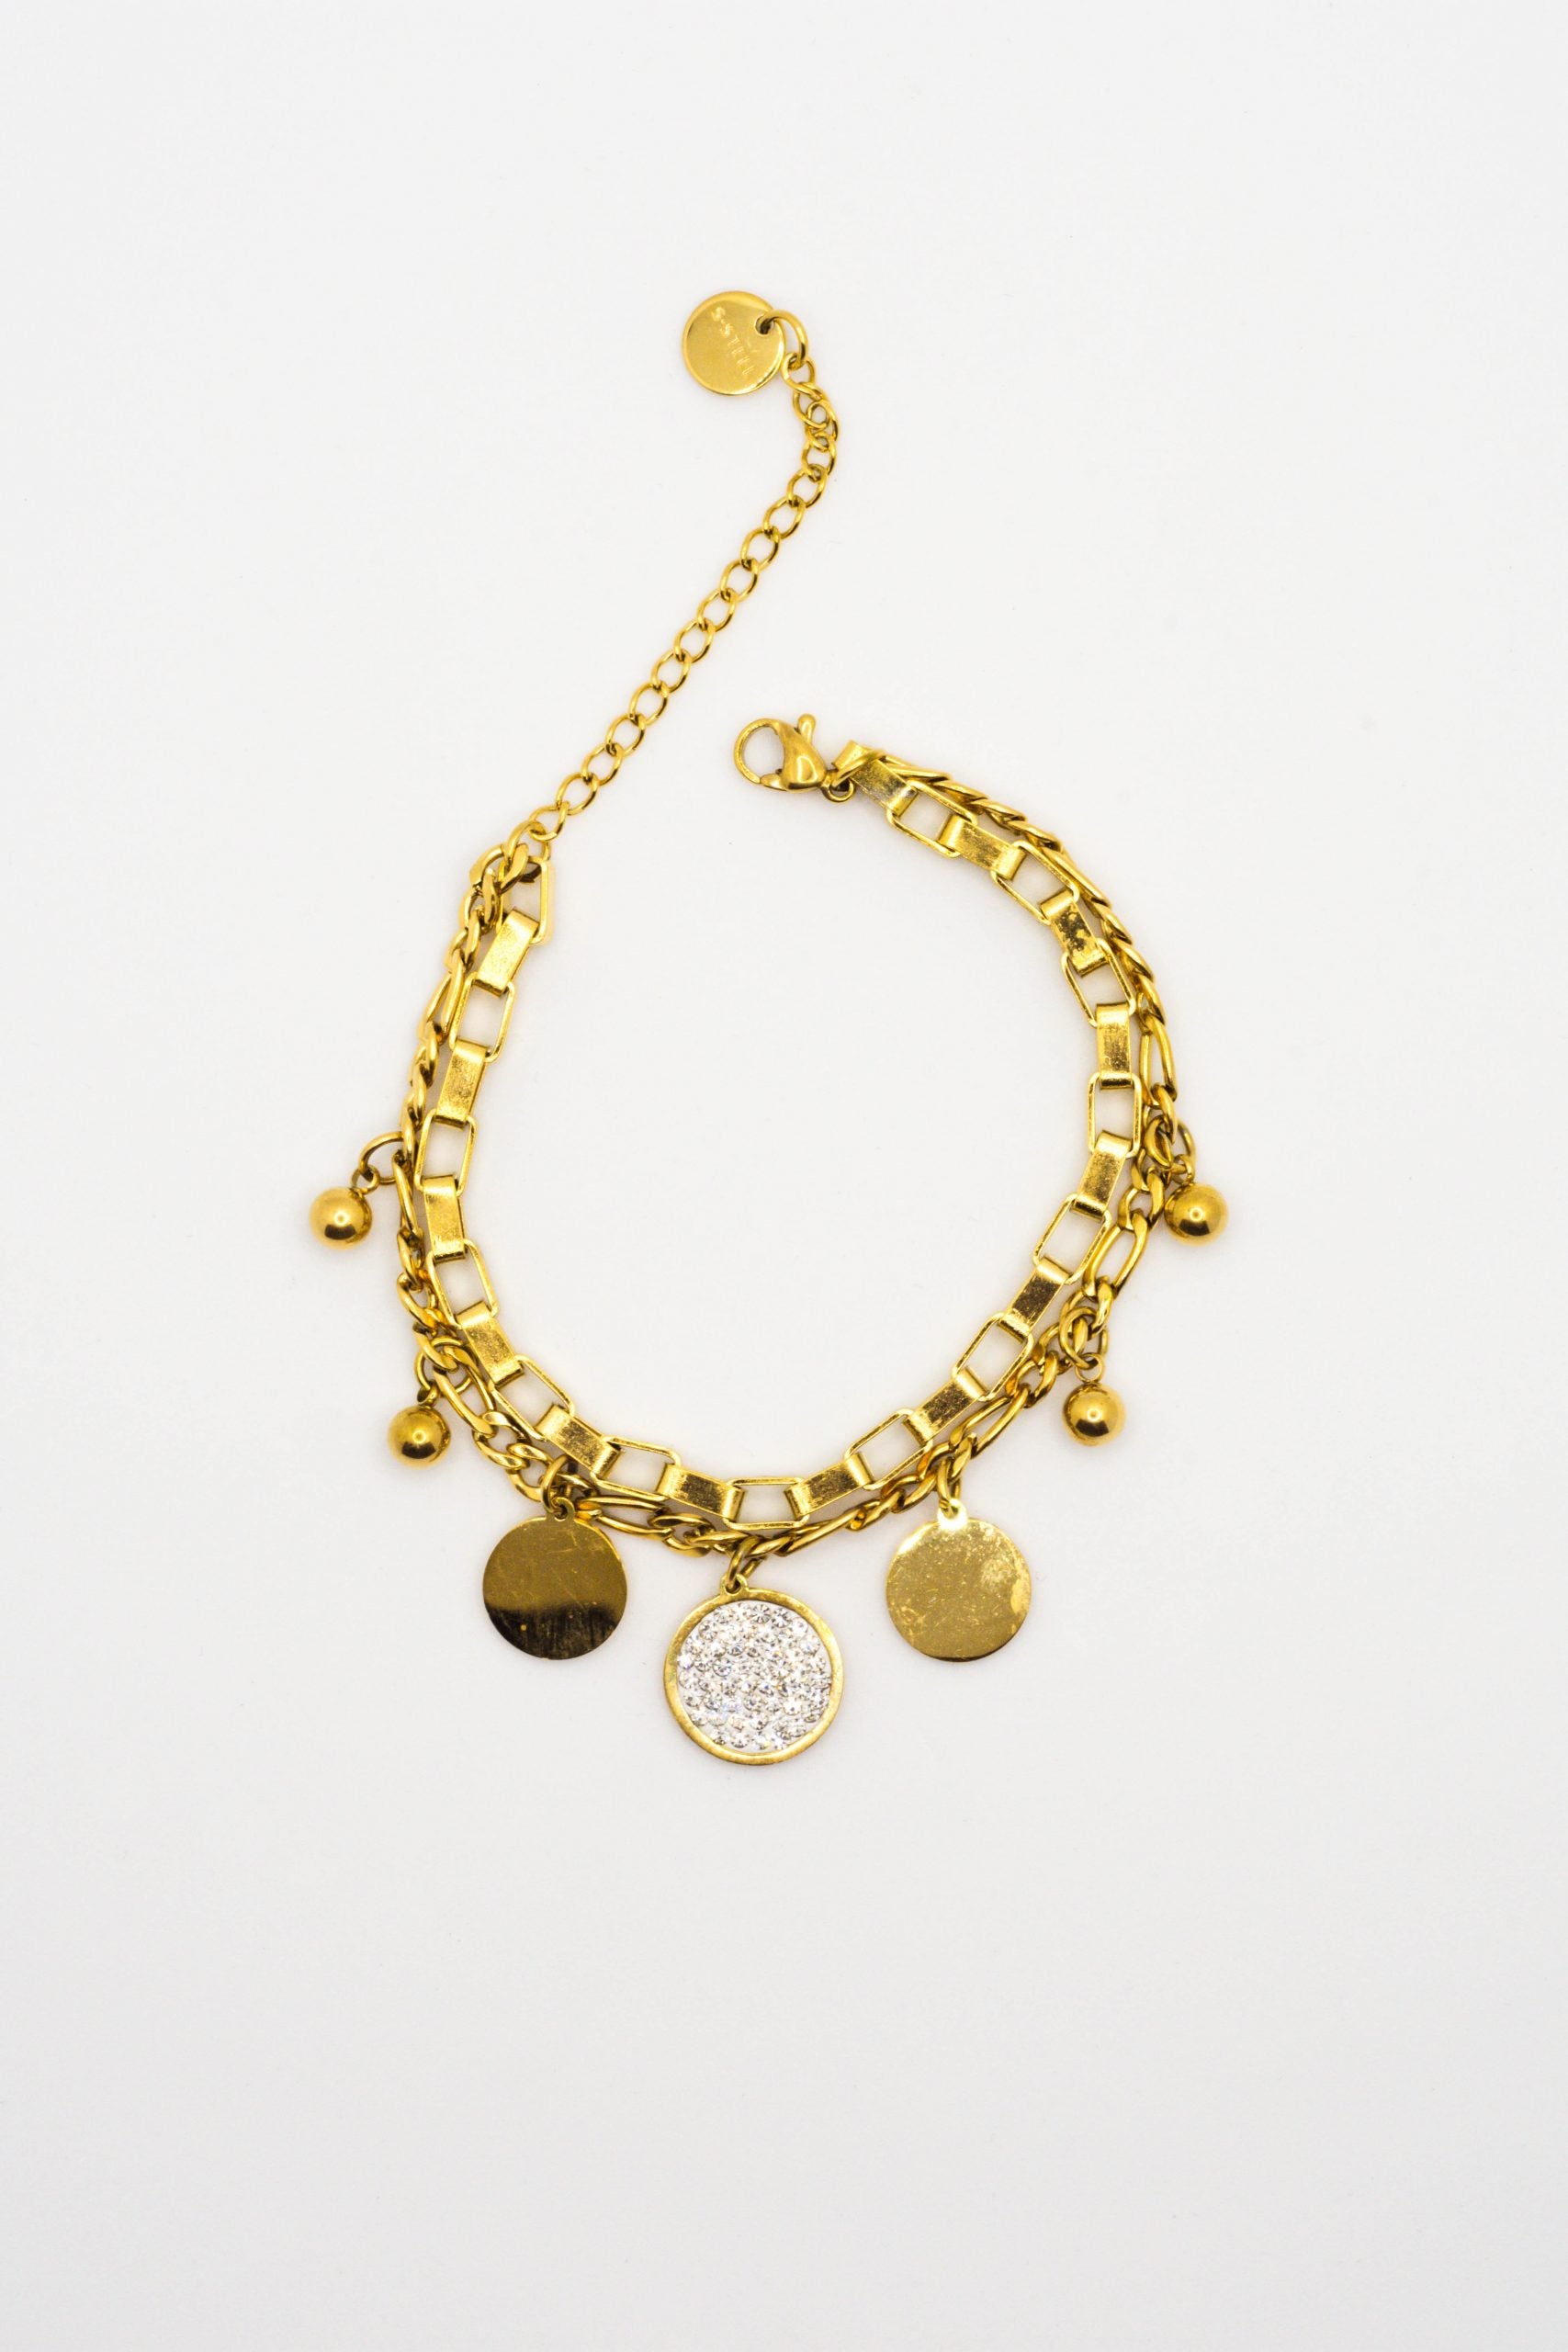 cry-gioielli-handmade-acciaio-jewelry-fatti-a-mano-bracciale-oro